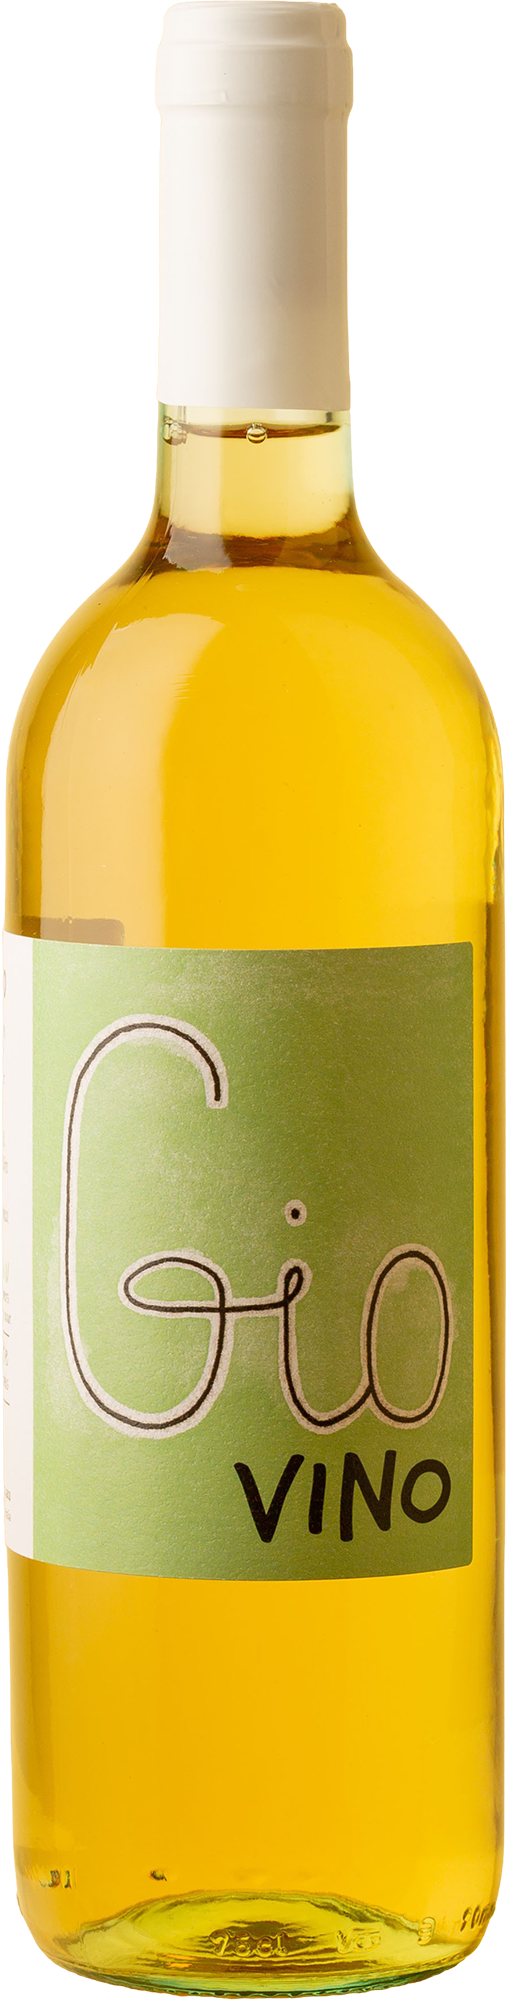 Giovino - Bianco Catarratto 2020 White Wine